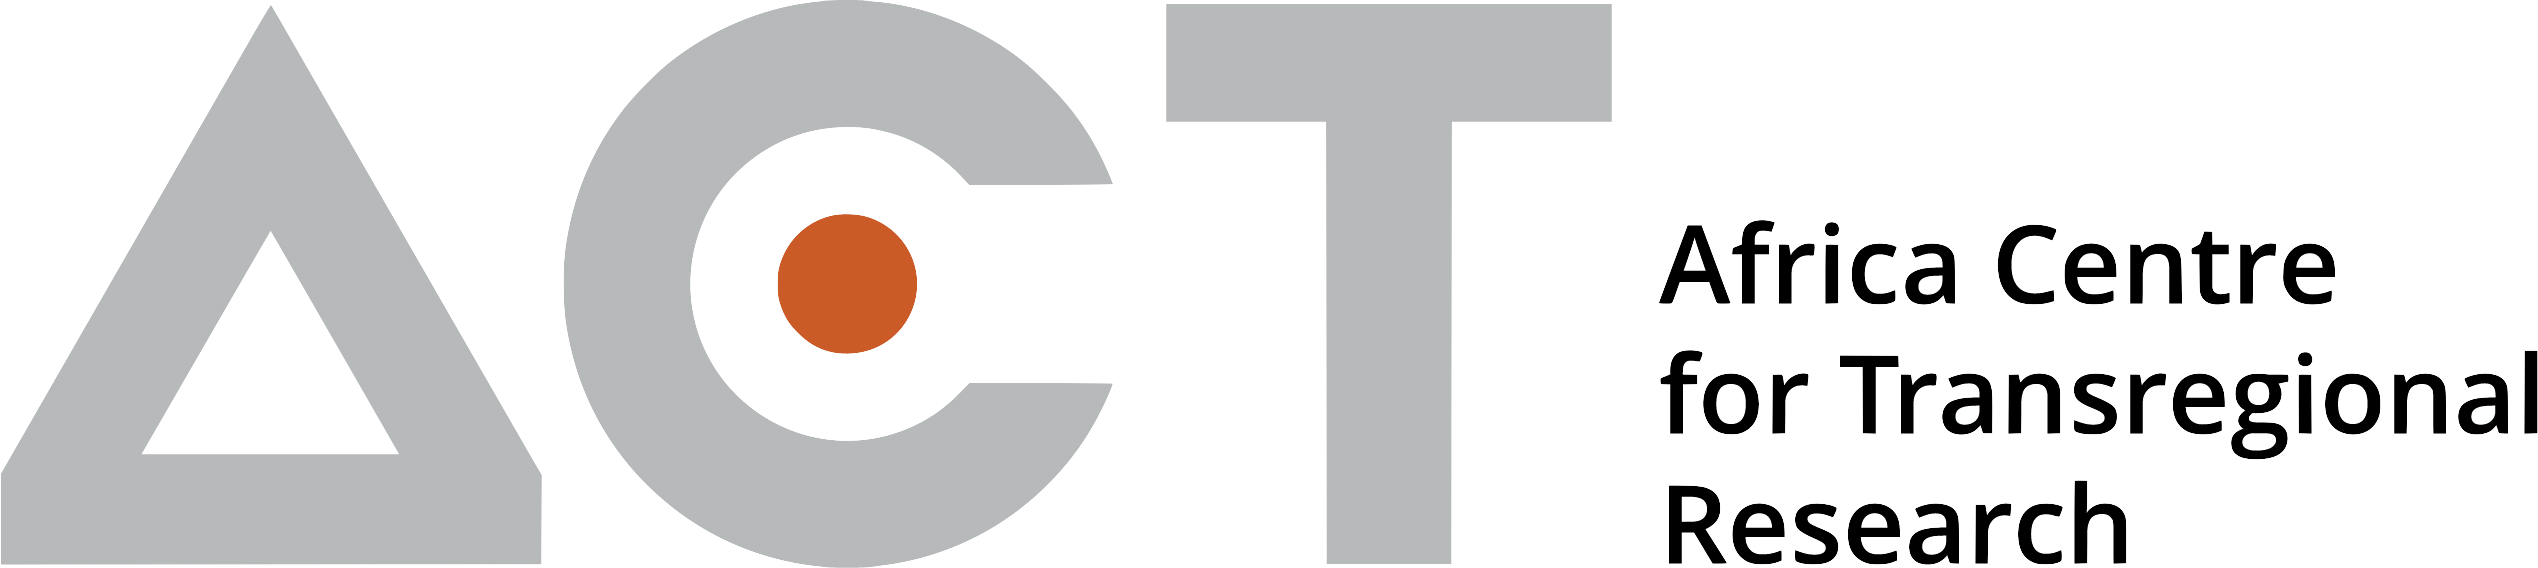 ACT_Logo_transparent